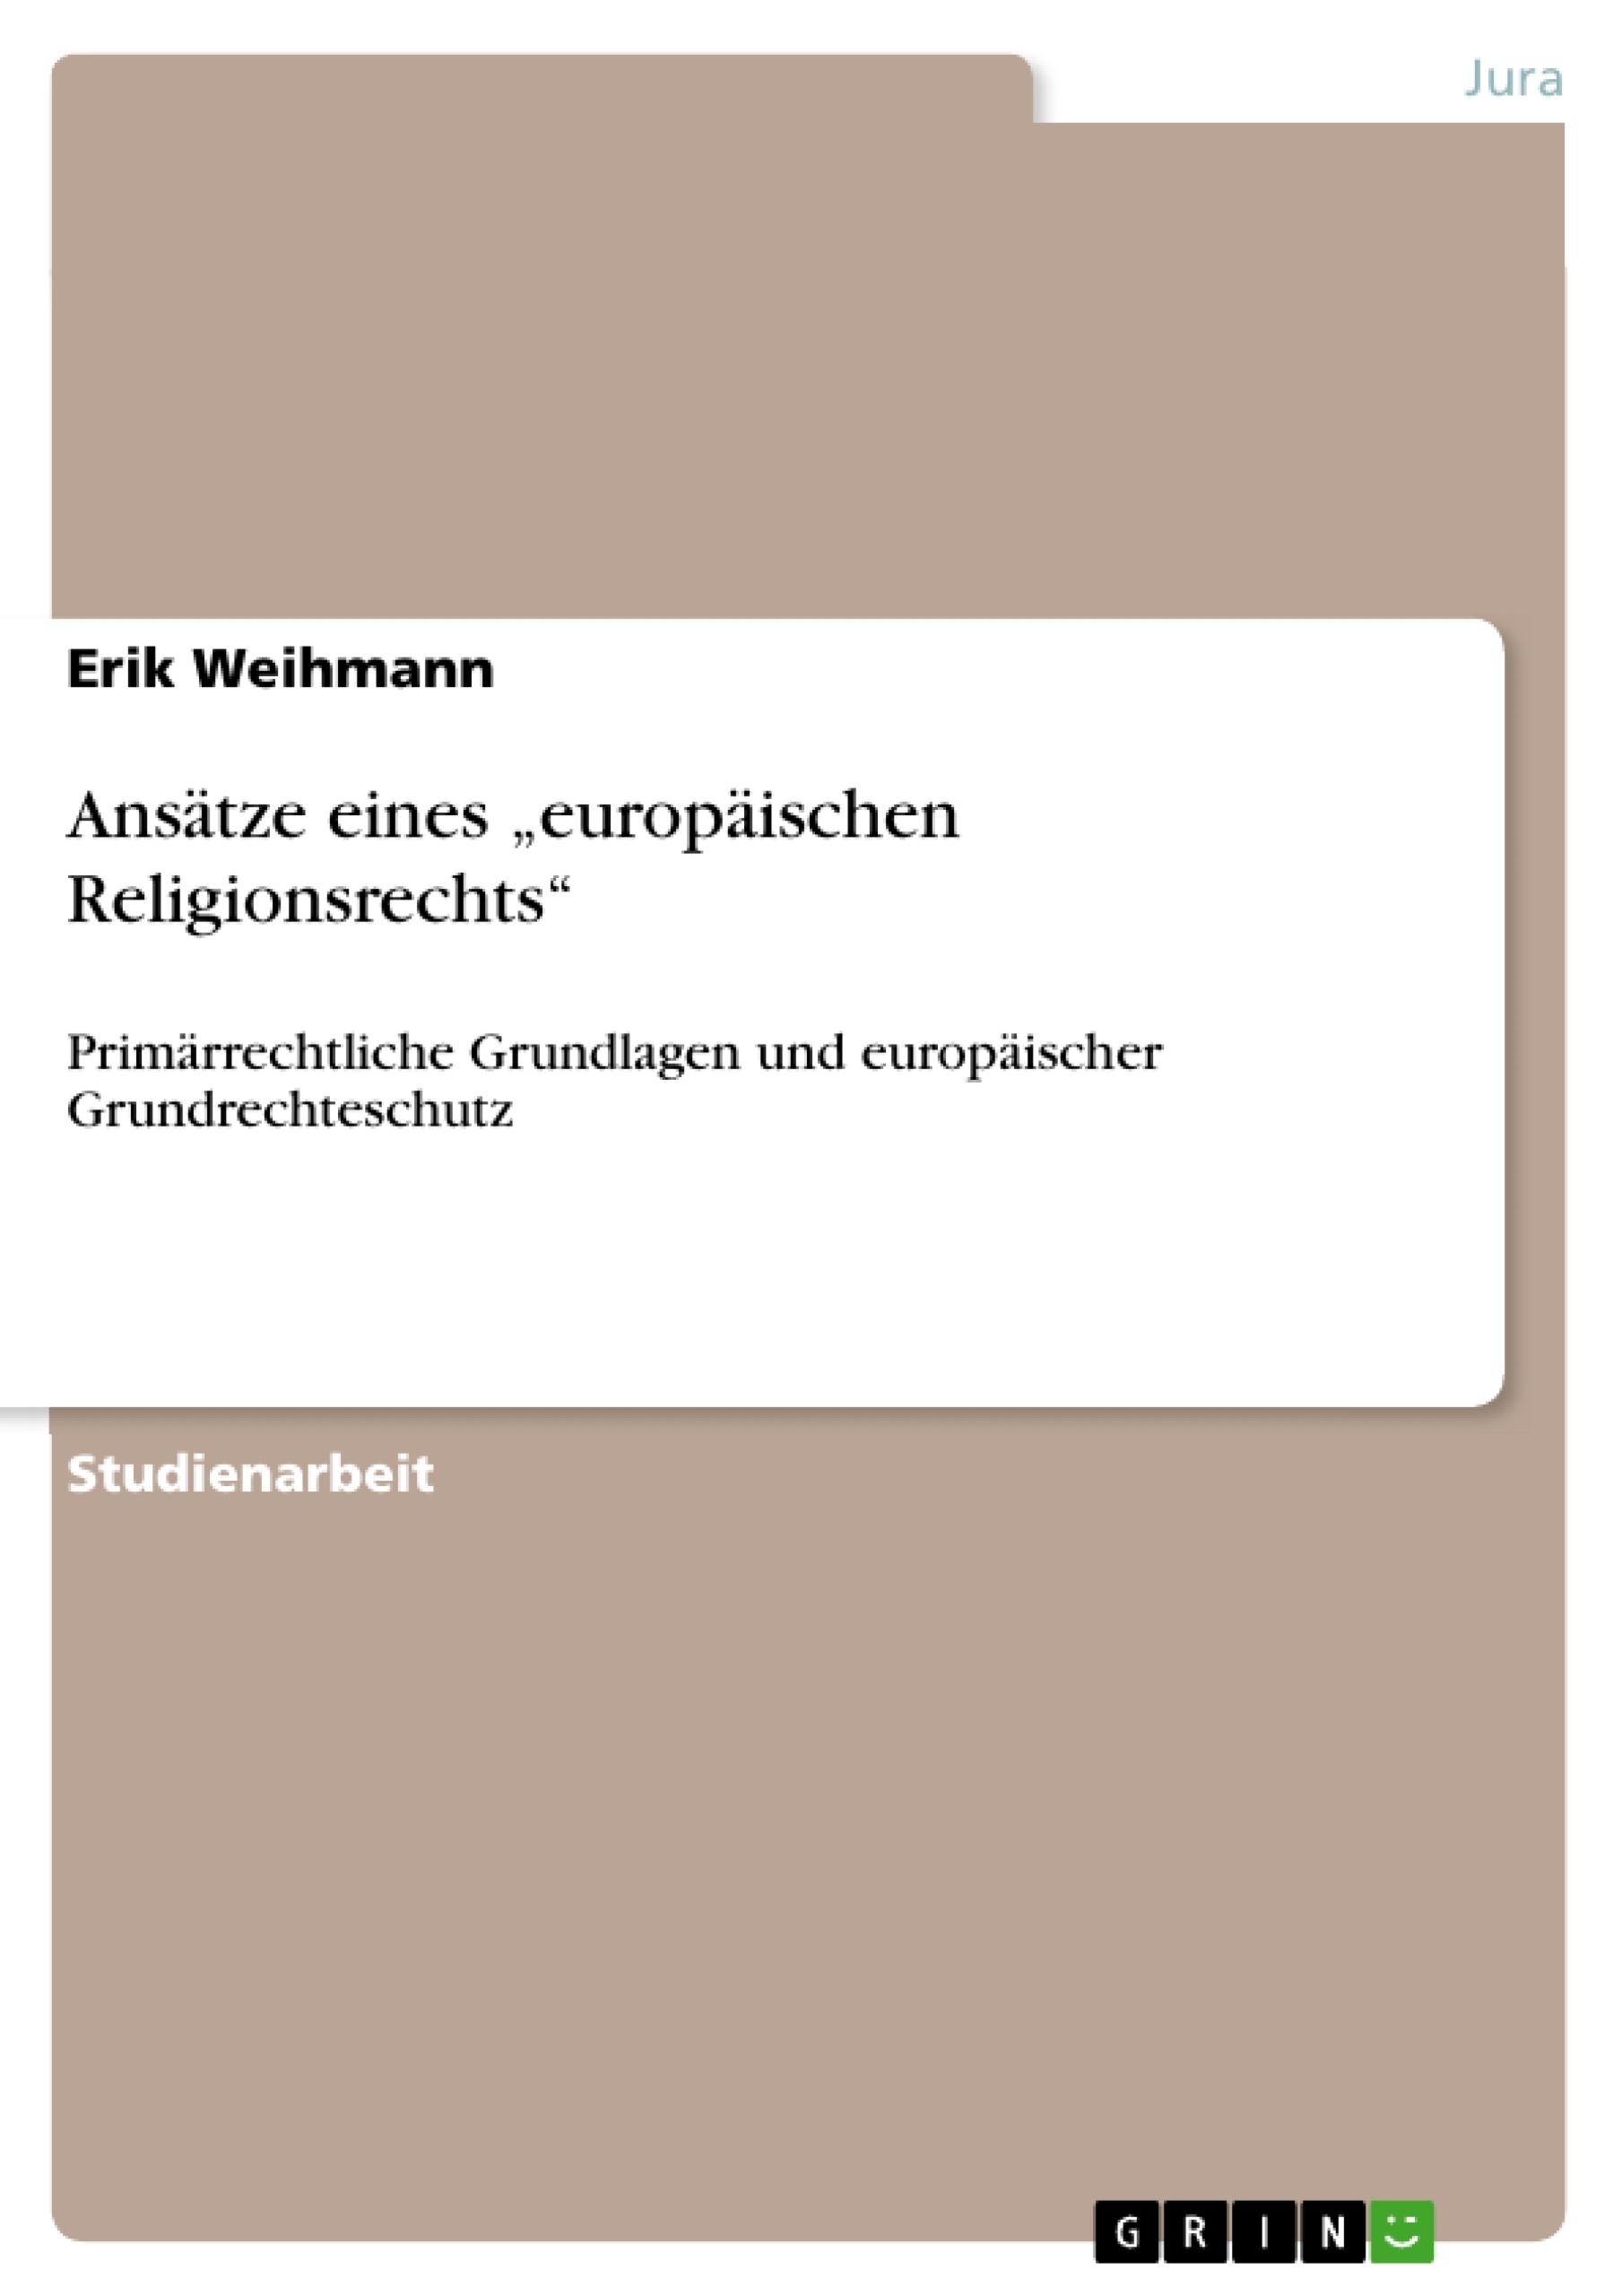 Title: Ansätze eines „europäischen Religionsrechts“